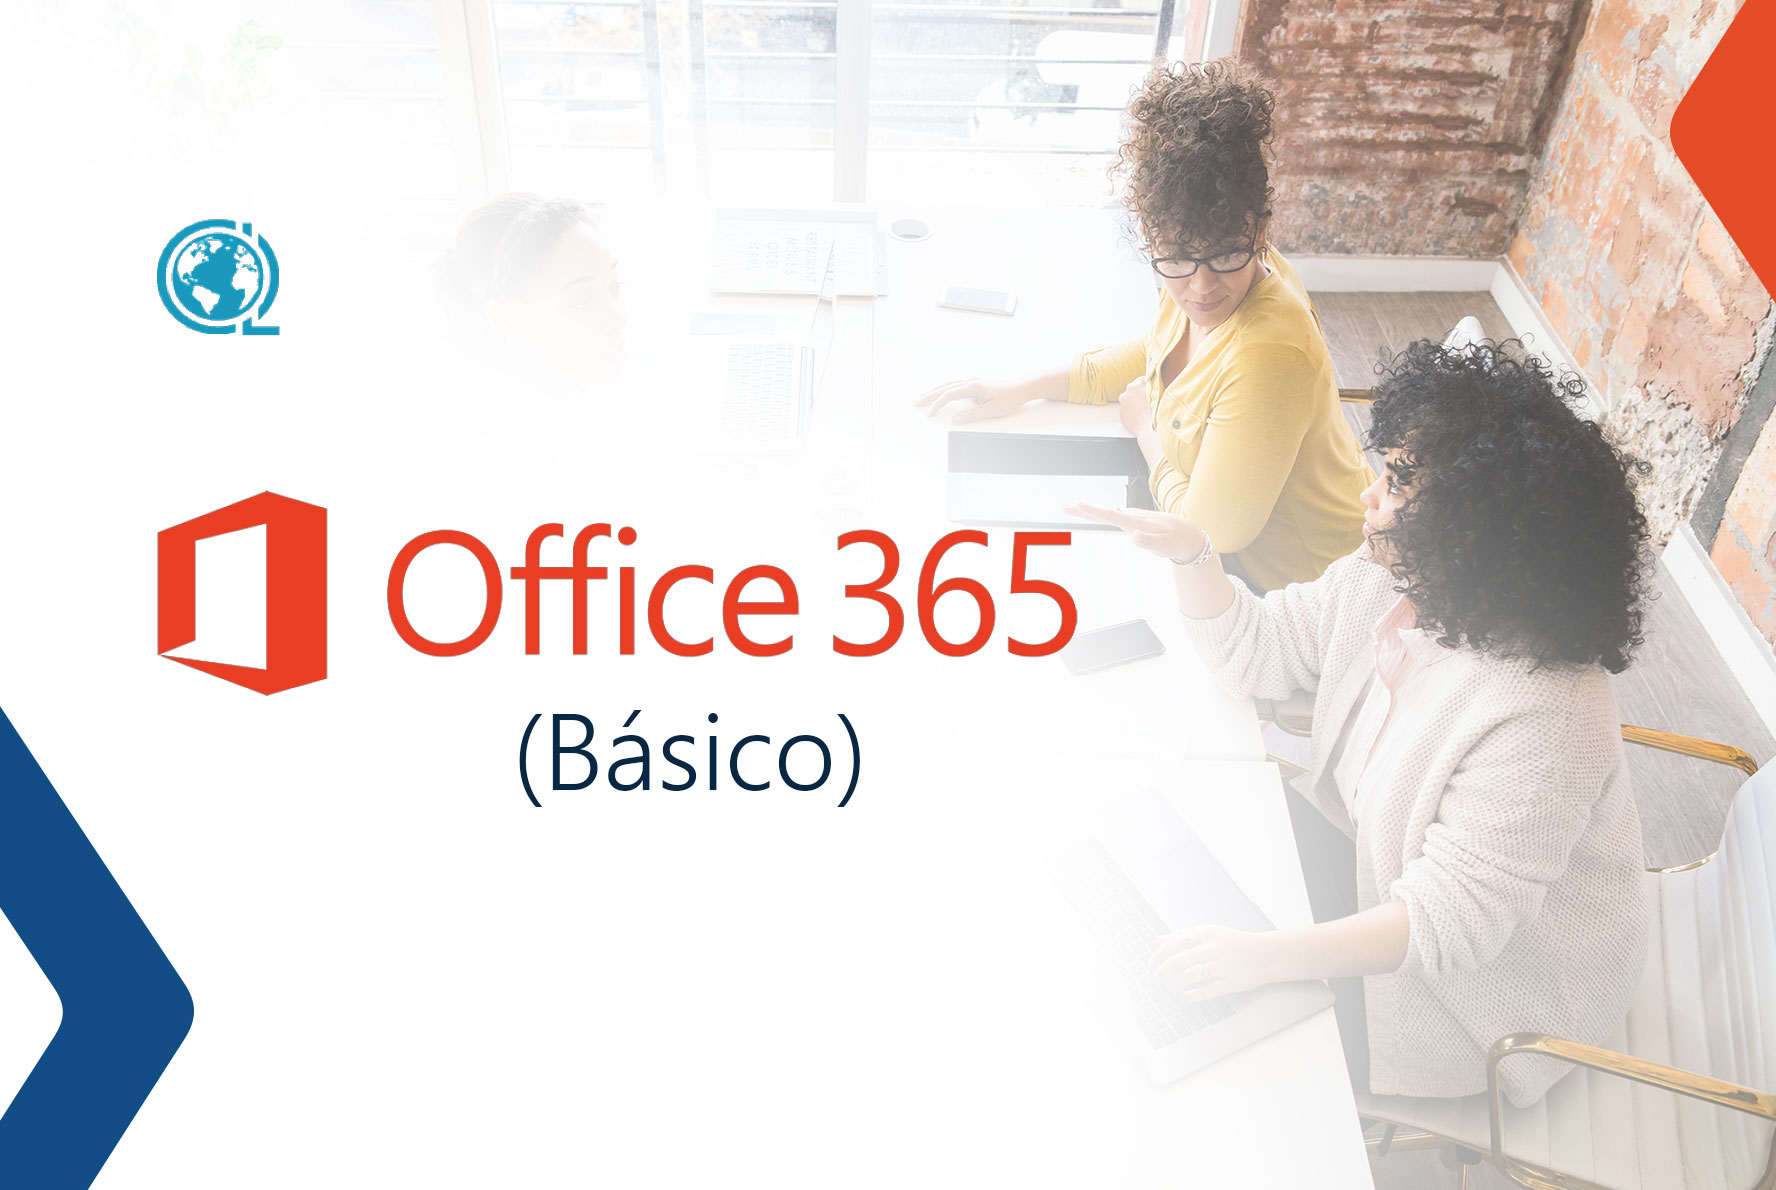 Uso y aprovechamiento de Office 365 en la empresa (Herramientas básicas)